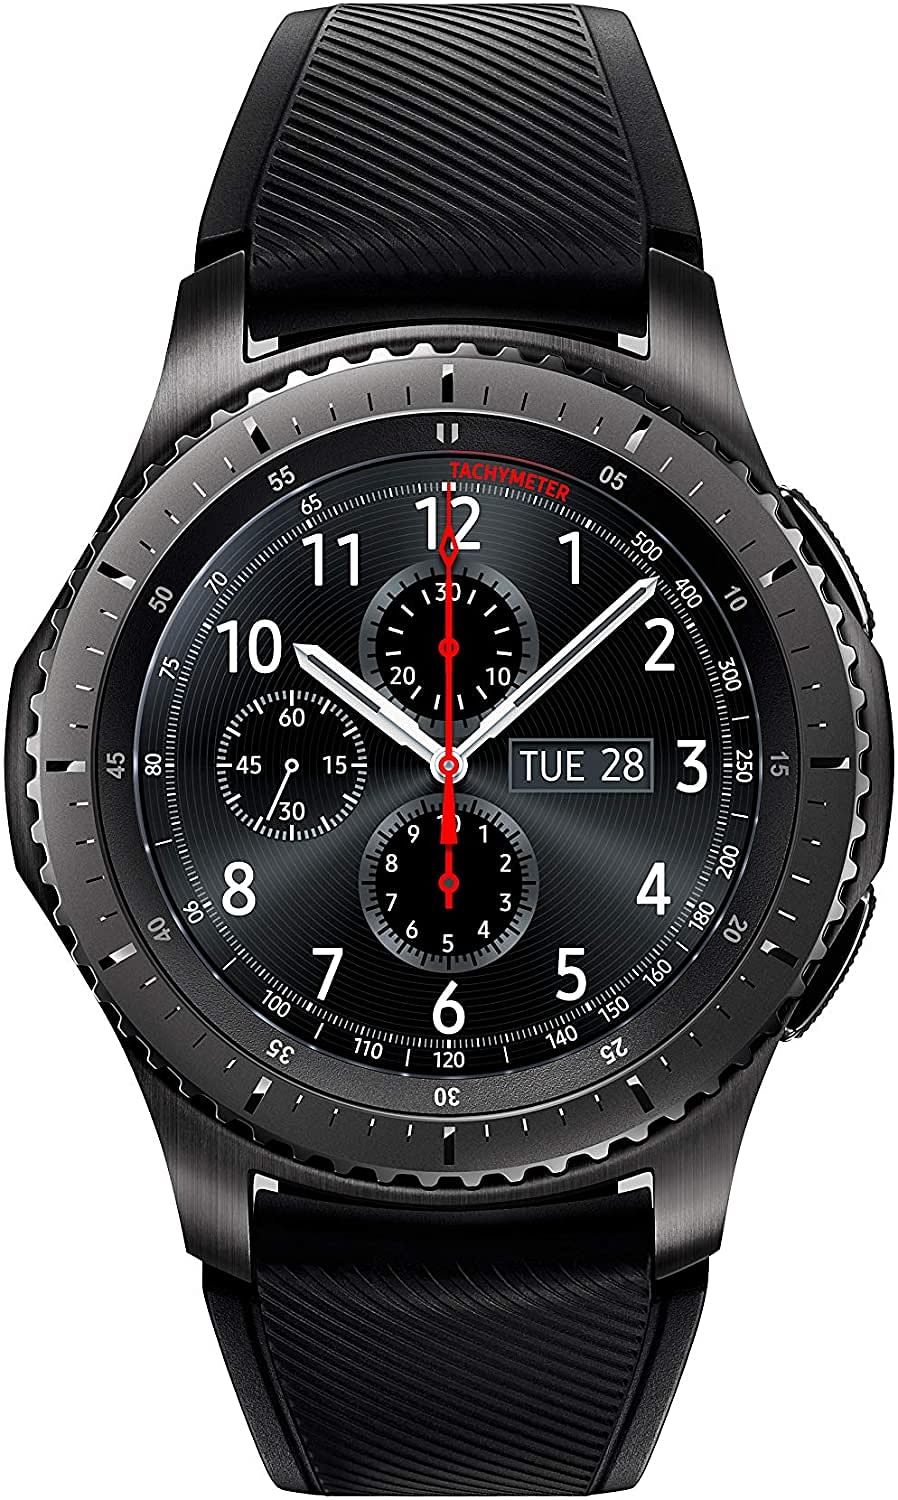 Samsung Gear S3 Frontier Smart Watch - Dark Grey